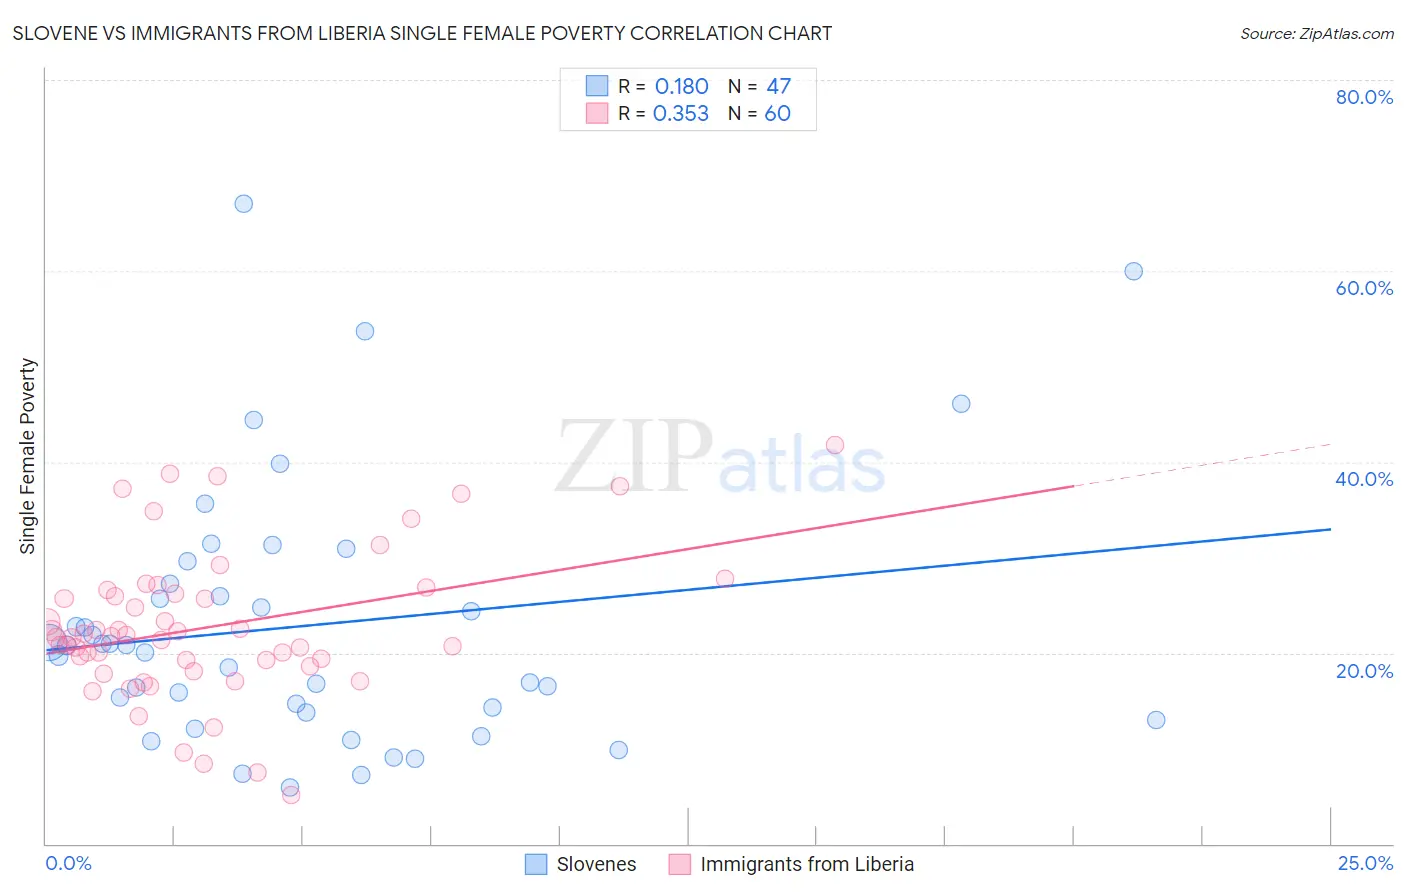 Slovene vs Immigrants from Liberia Single Female Poverty